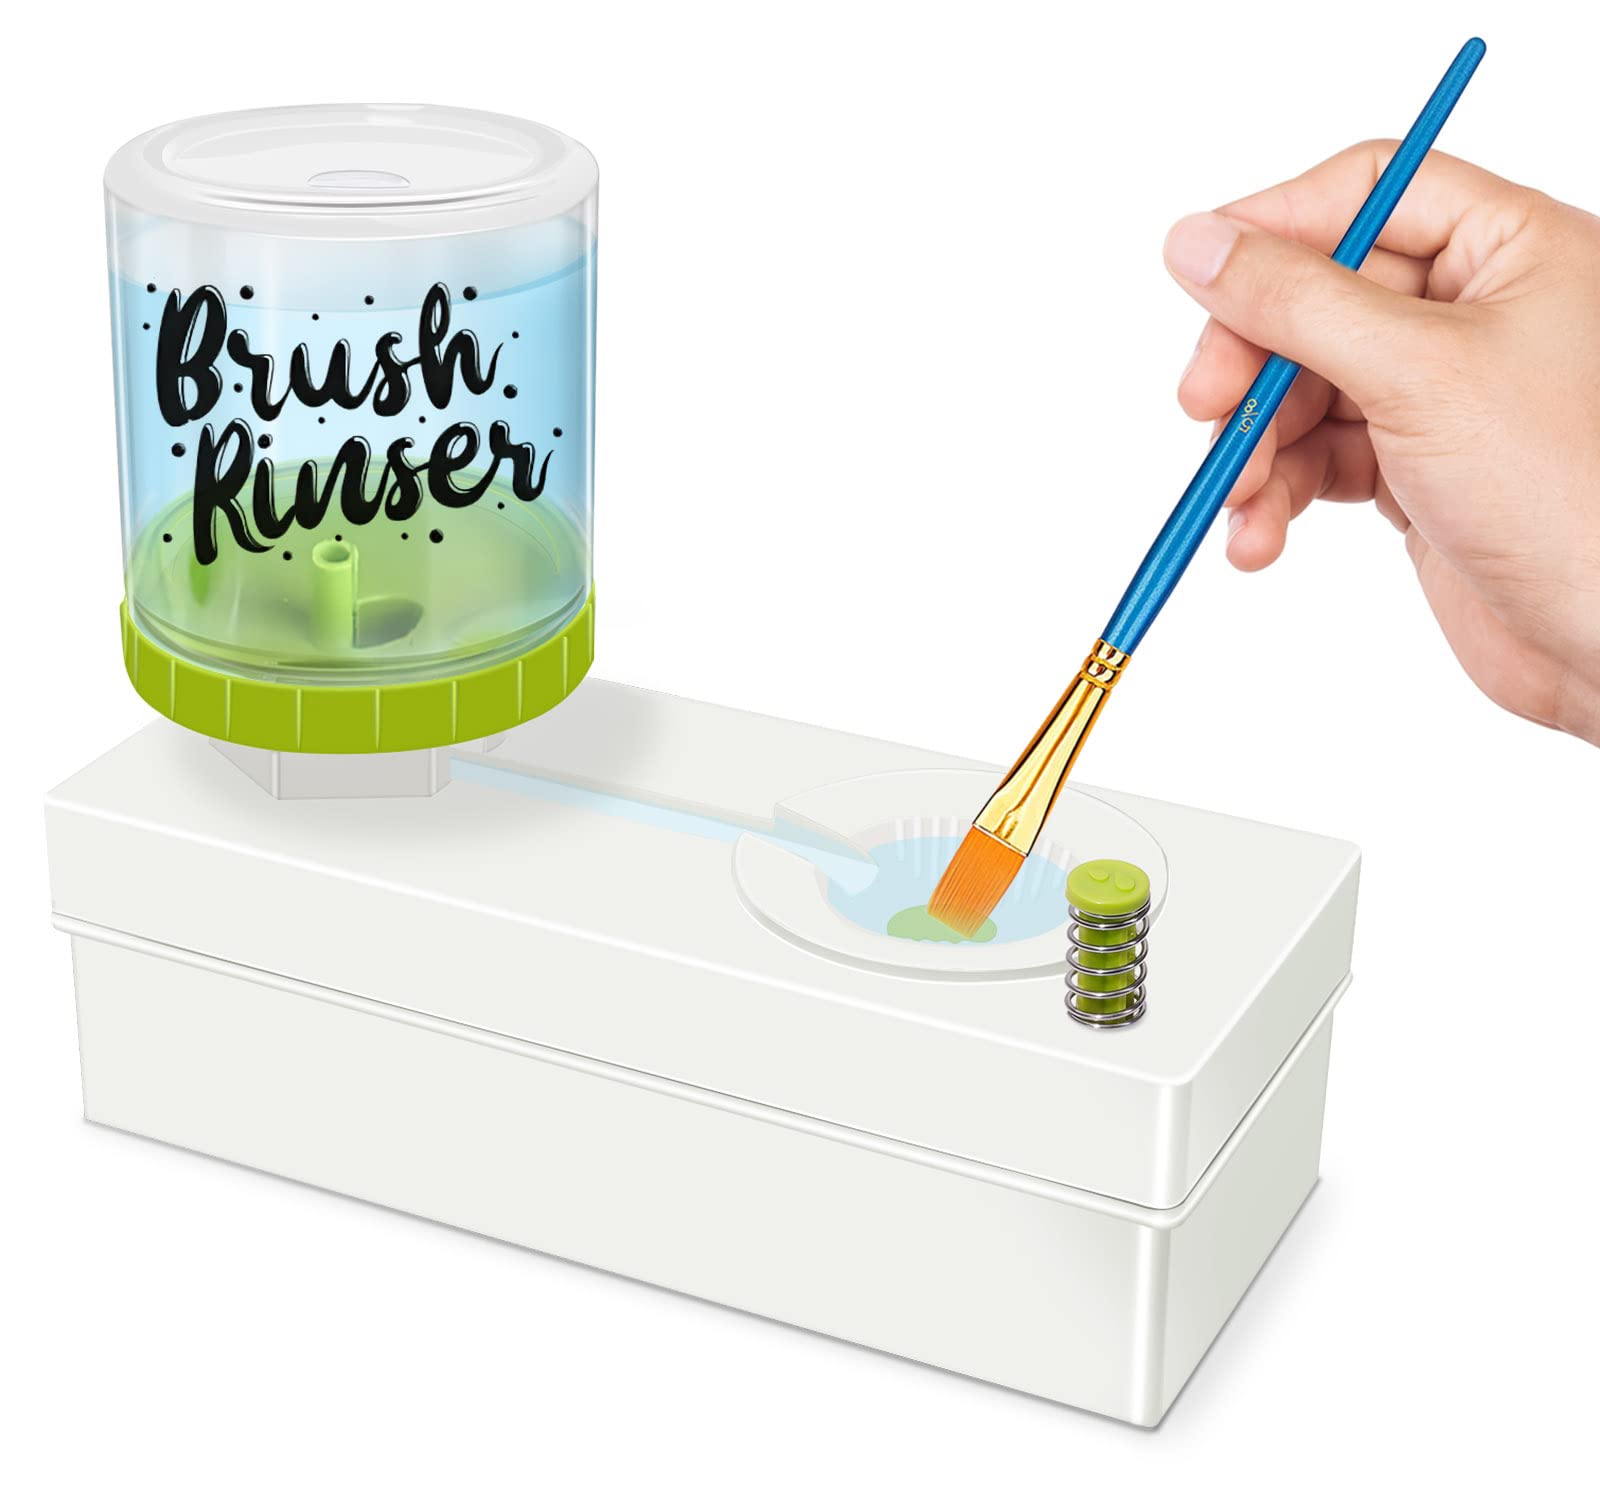 Jual Brush Rinser Paint Brush Cleaner Dengan Cup Bilas Kuas Cat Cleaner -  Hijau - Kota Cimahi - Toko Plus Id